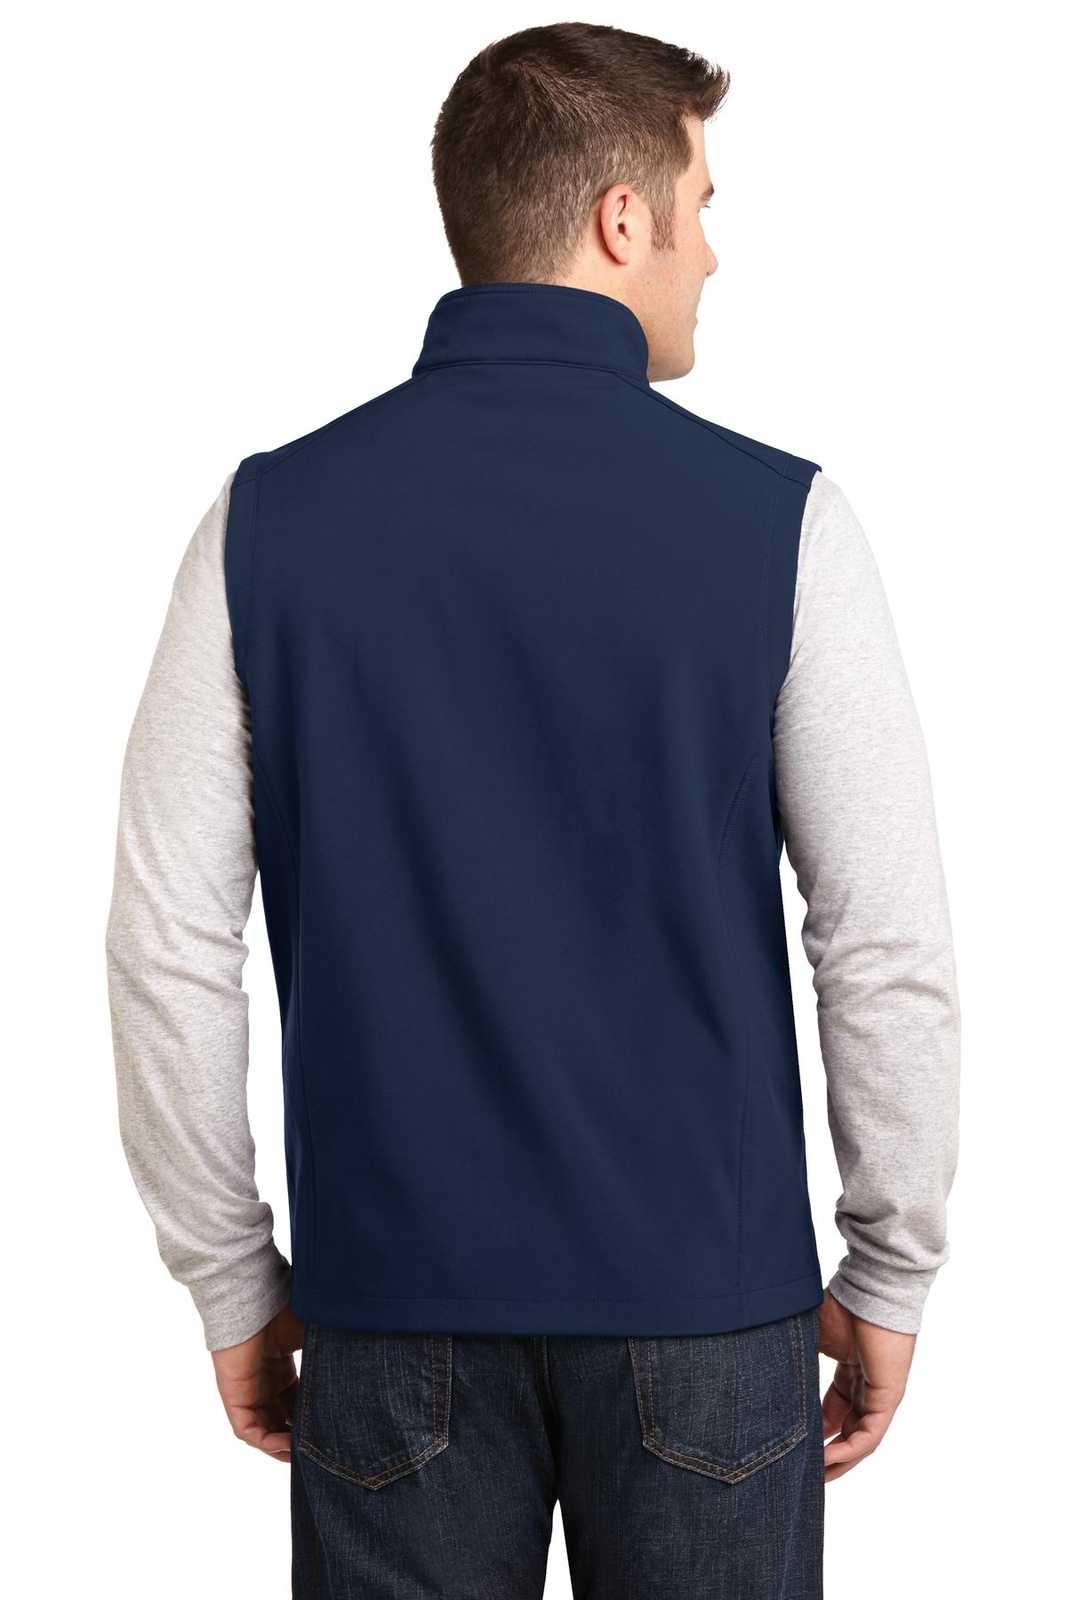 Port Authority J325 Core Soft Shell Vest - Dress Blue Navy - HIT a Double - 1